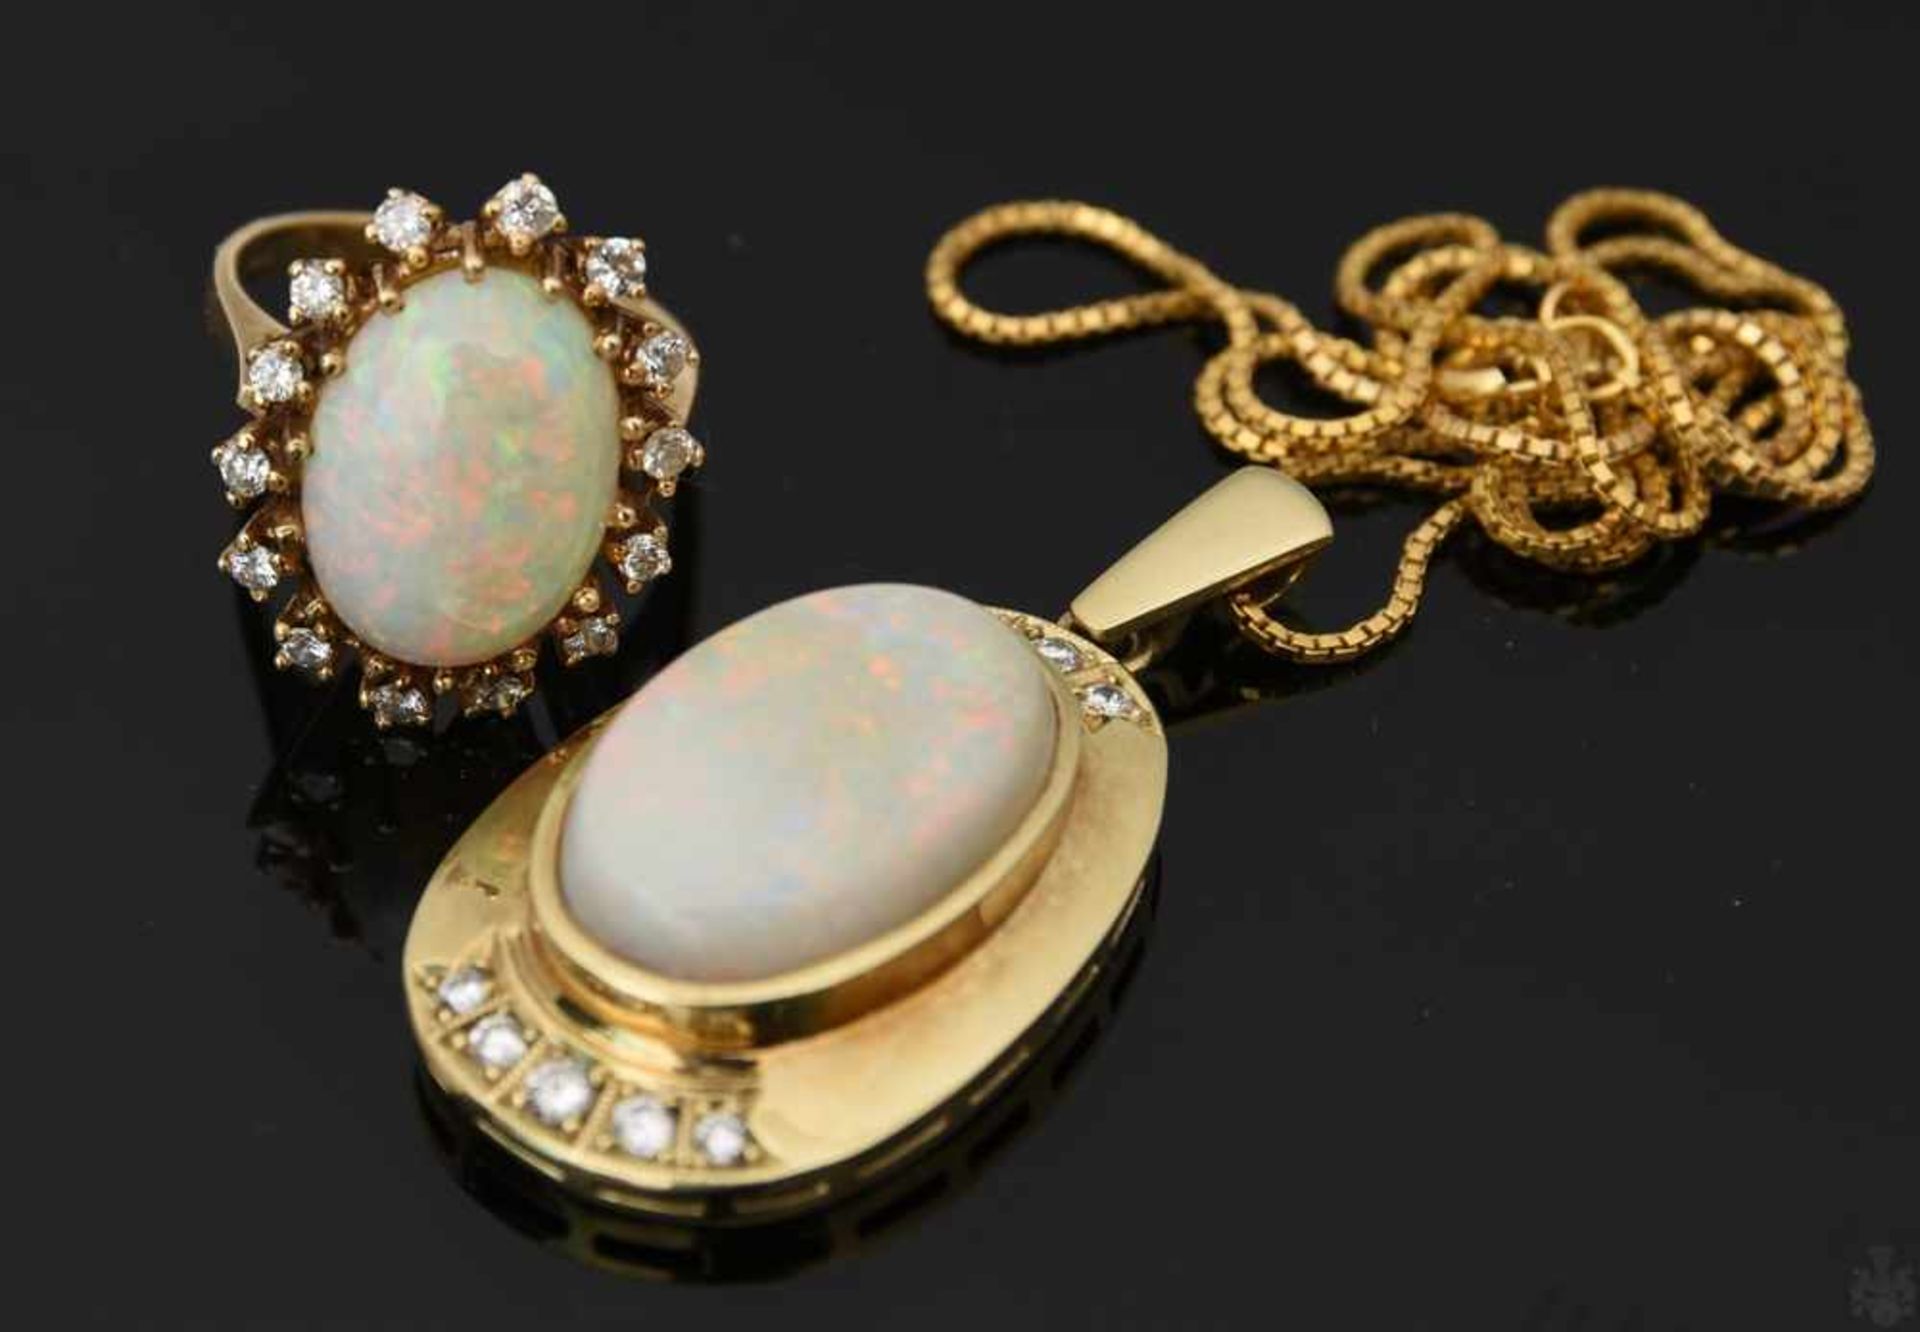 HALSKETTE MIT ANHÄNGER UND RING , mit Opalen und Brillianten.Oval geschliffene Opale mit umlaufenden